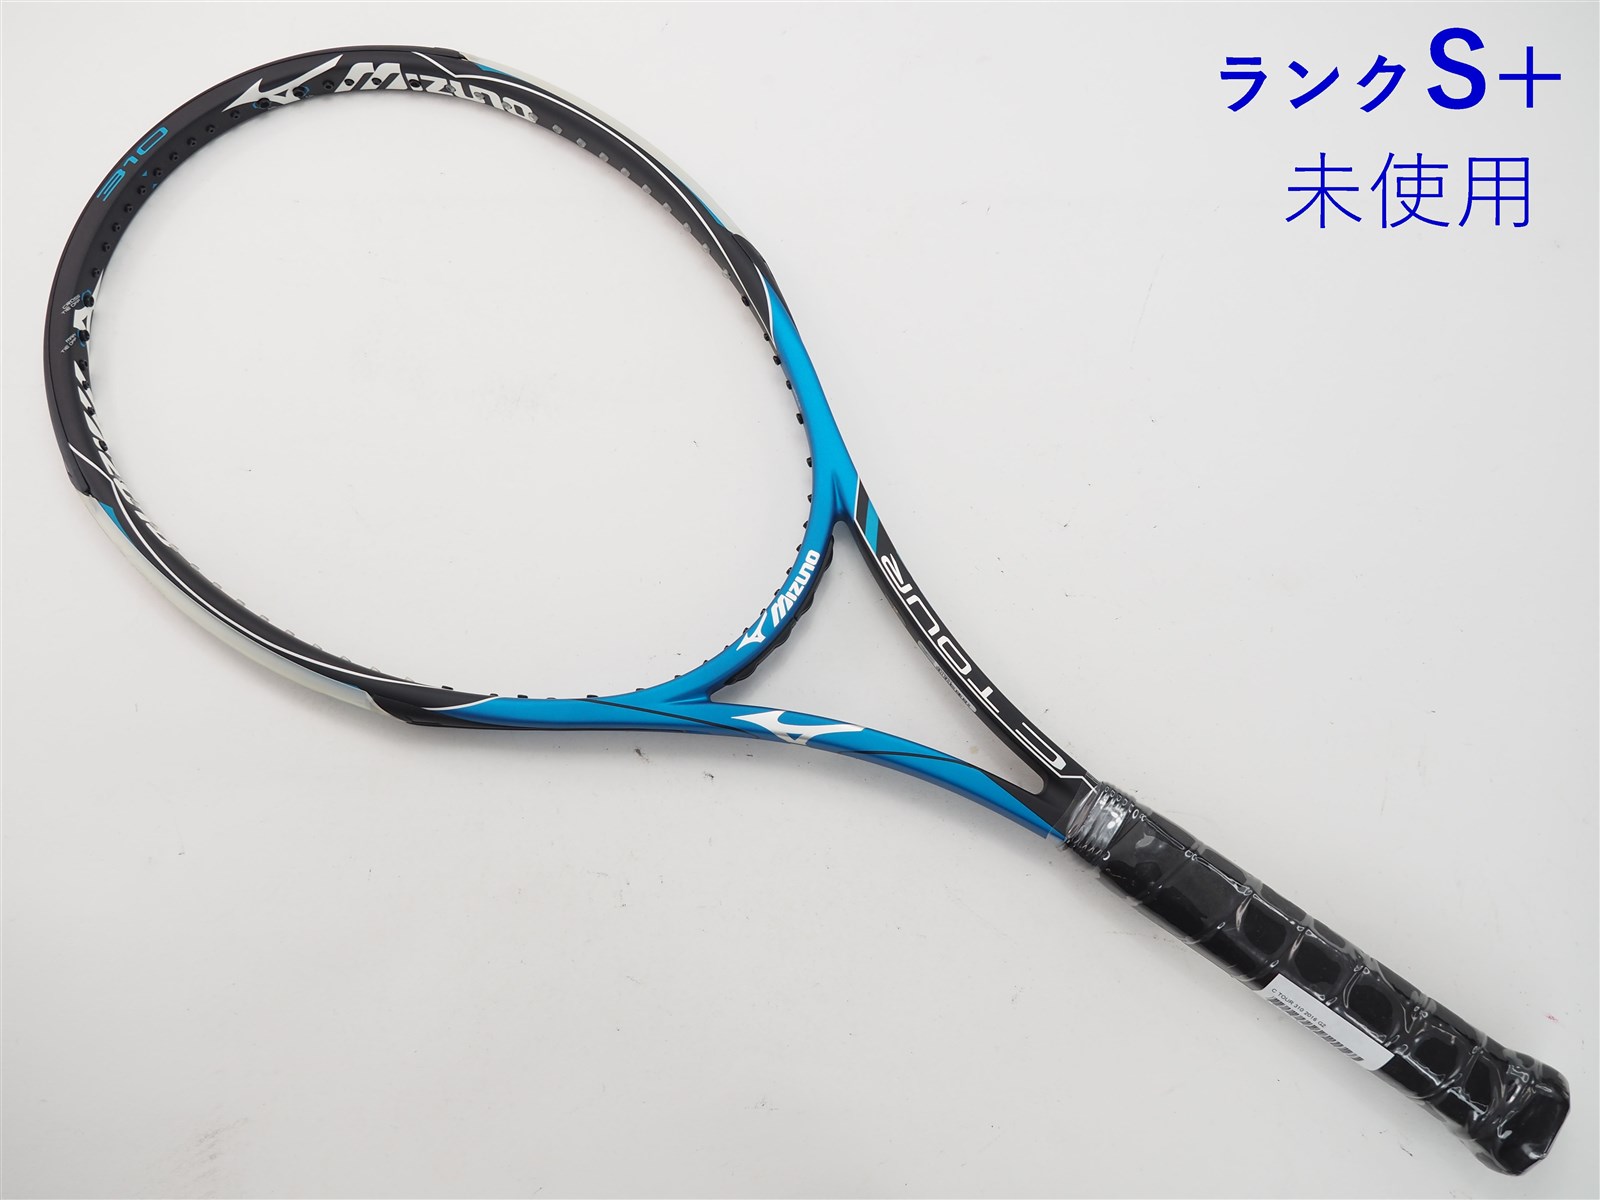 中古 テニスラケット ミズノ エフ ツアー 300 2017年モデル (G3)MIZUNO 